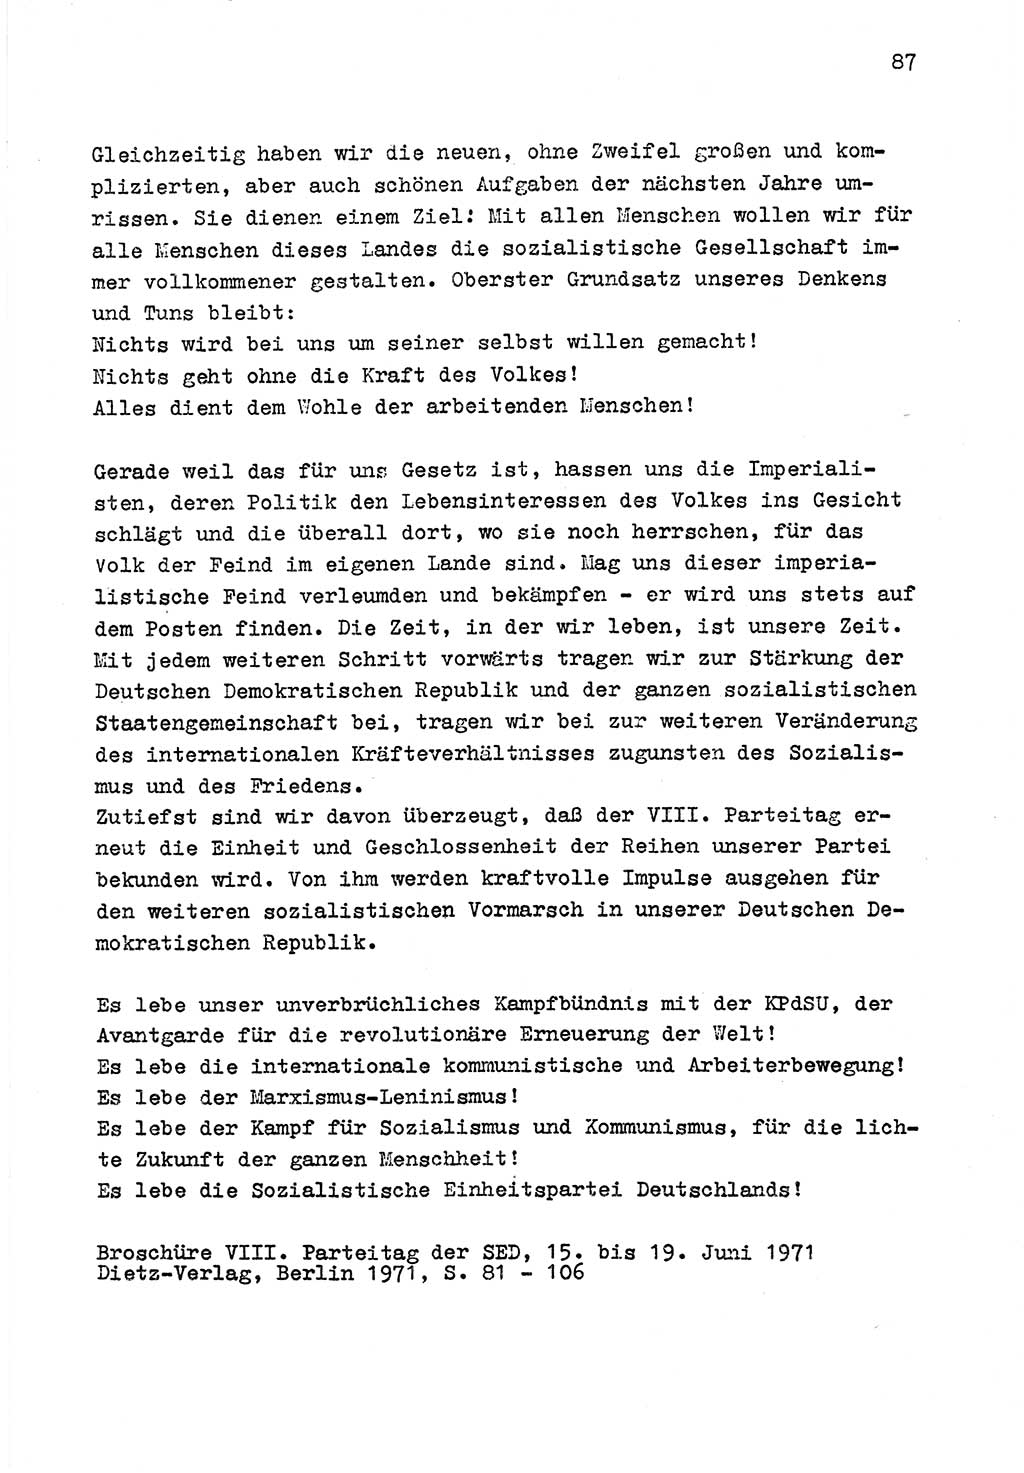 Zu Fragen der Parteiarbeit [Sozialistische Einheitspartei Deutschlands (SED) Deutsche Demokratische Republik (DDR)] 1979, Seite 87 (Fr. PA SED DDR 1979, S. 87)